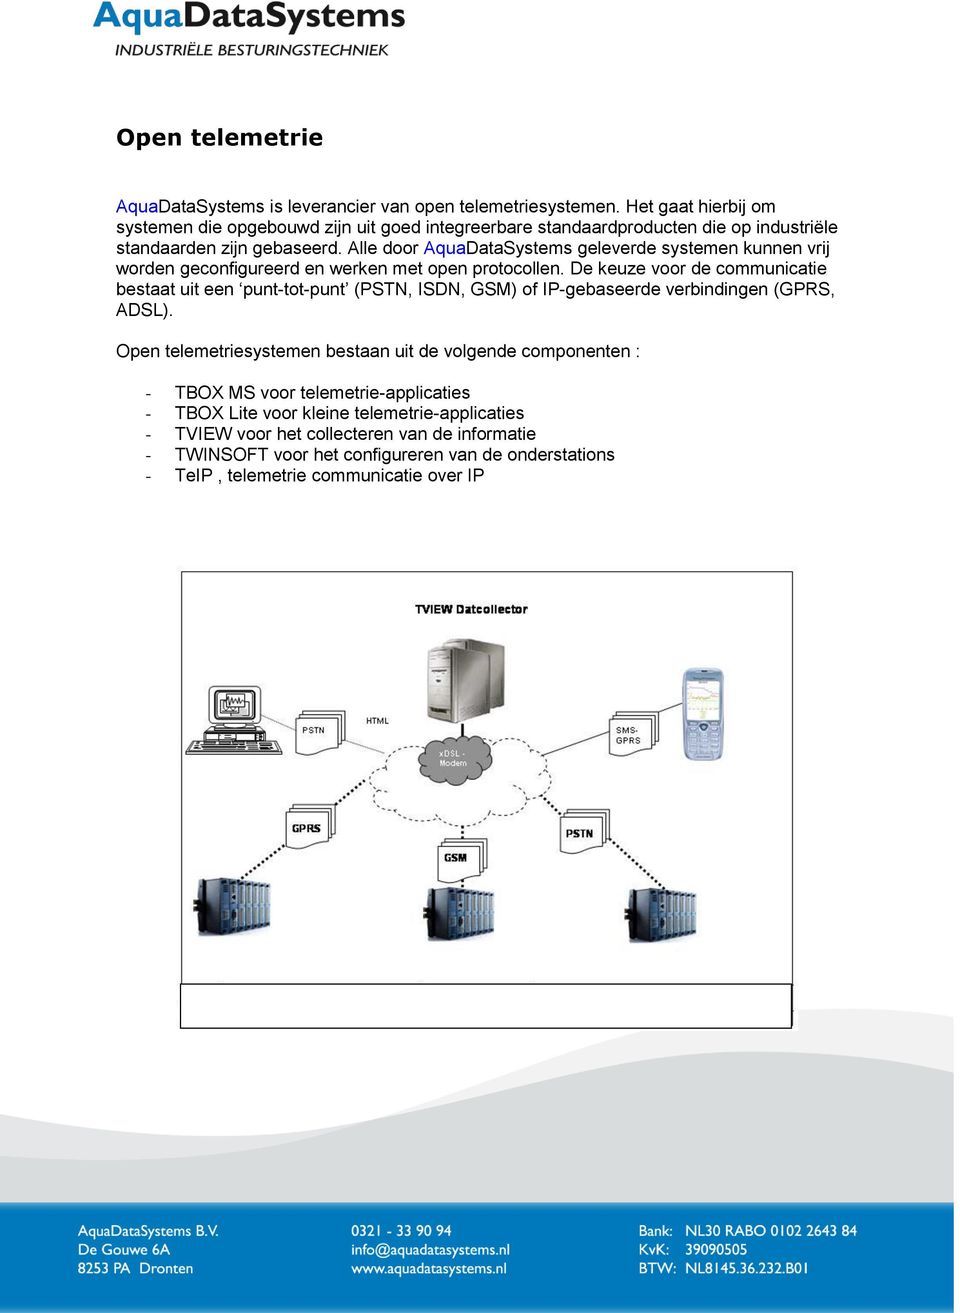 Alle door AquaDataSystems geleverde systemen kunnen vrij worden geconfigureerd en werken met open protocollen.